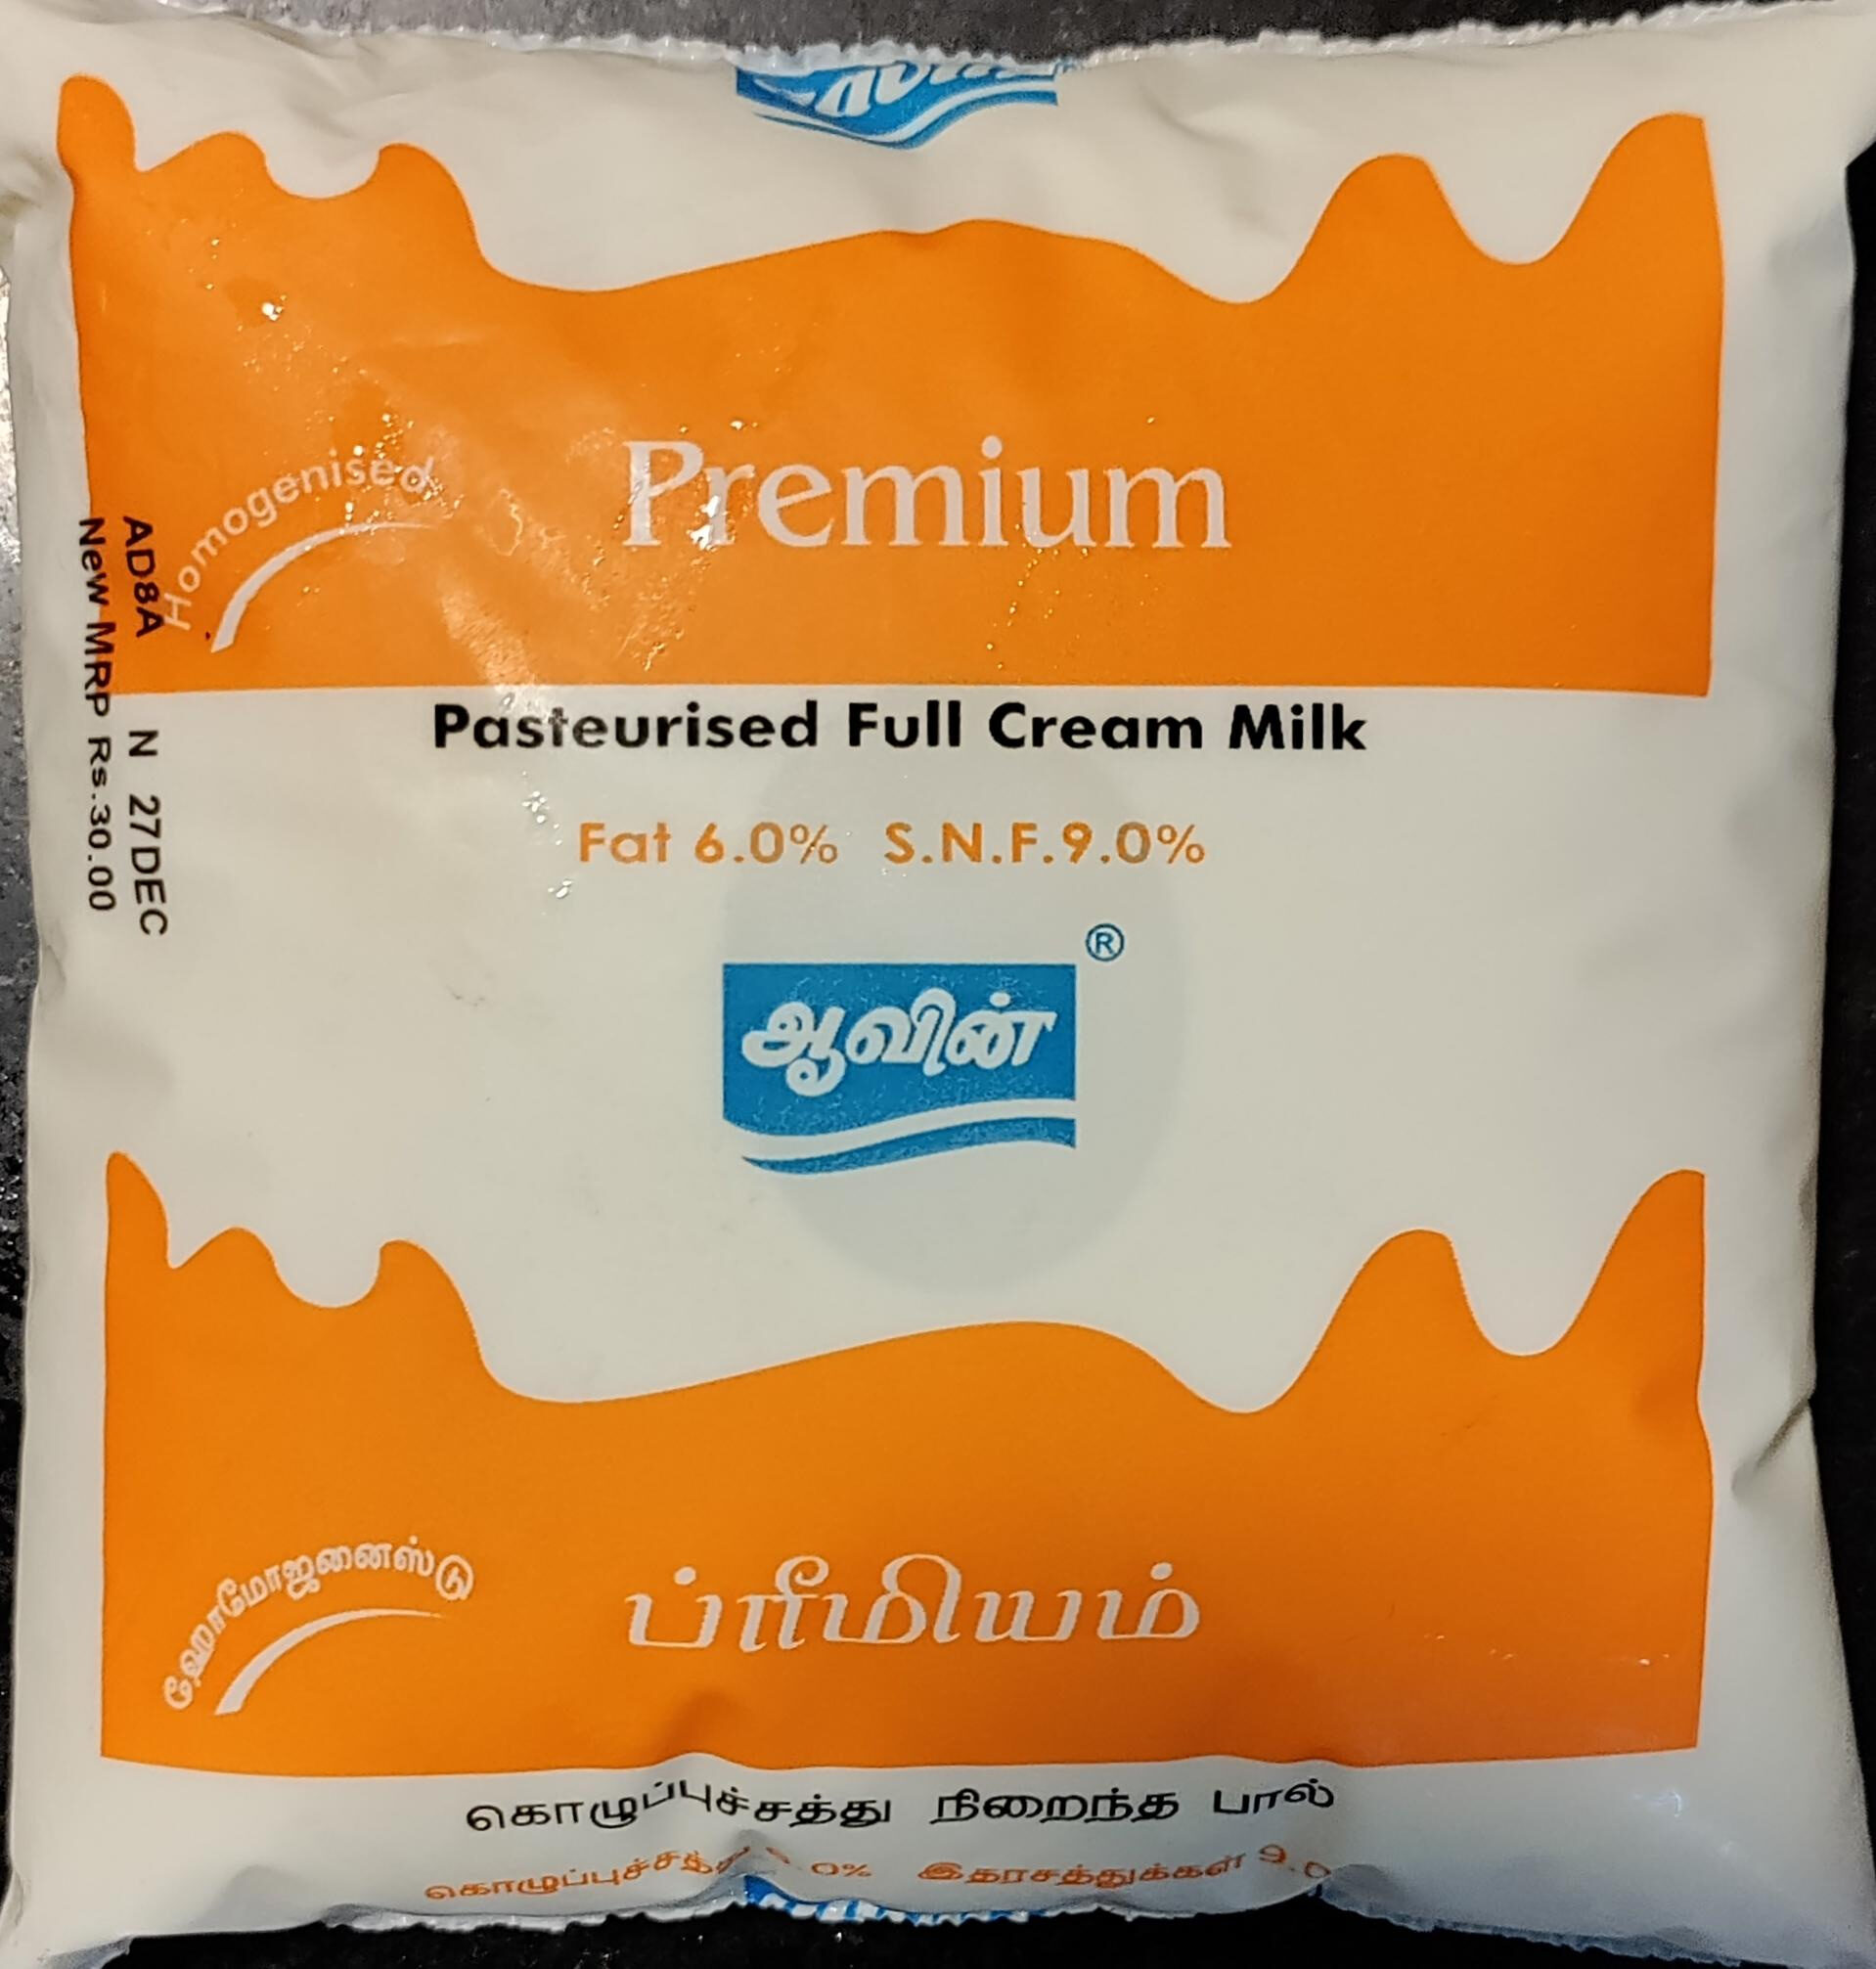 Pasteurised Full Cream Milk - Product